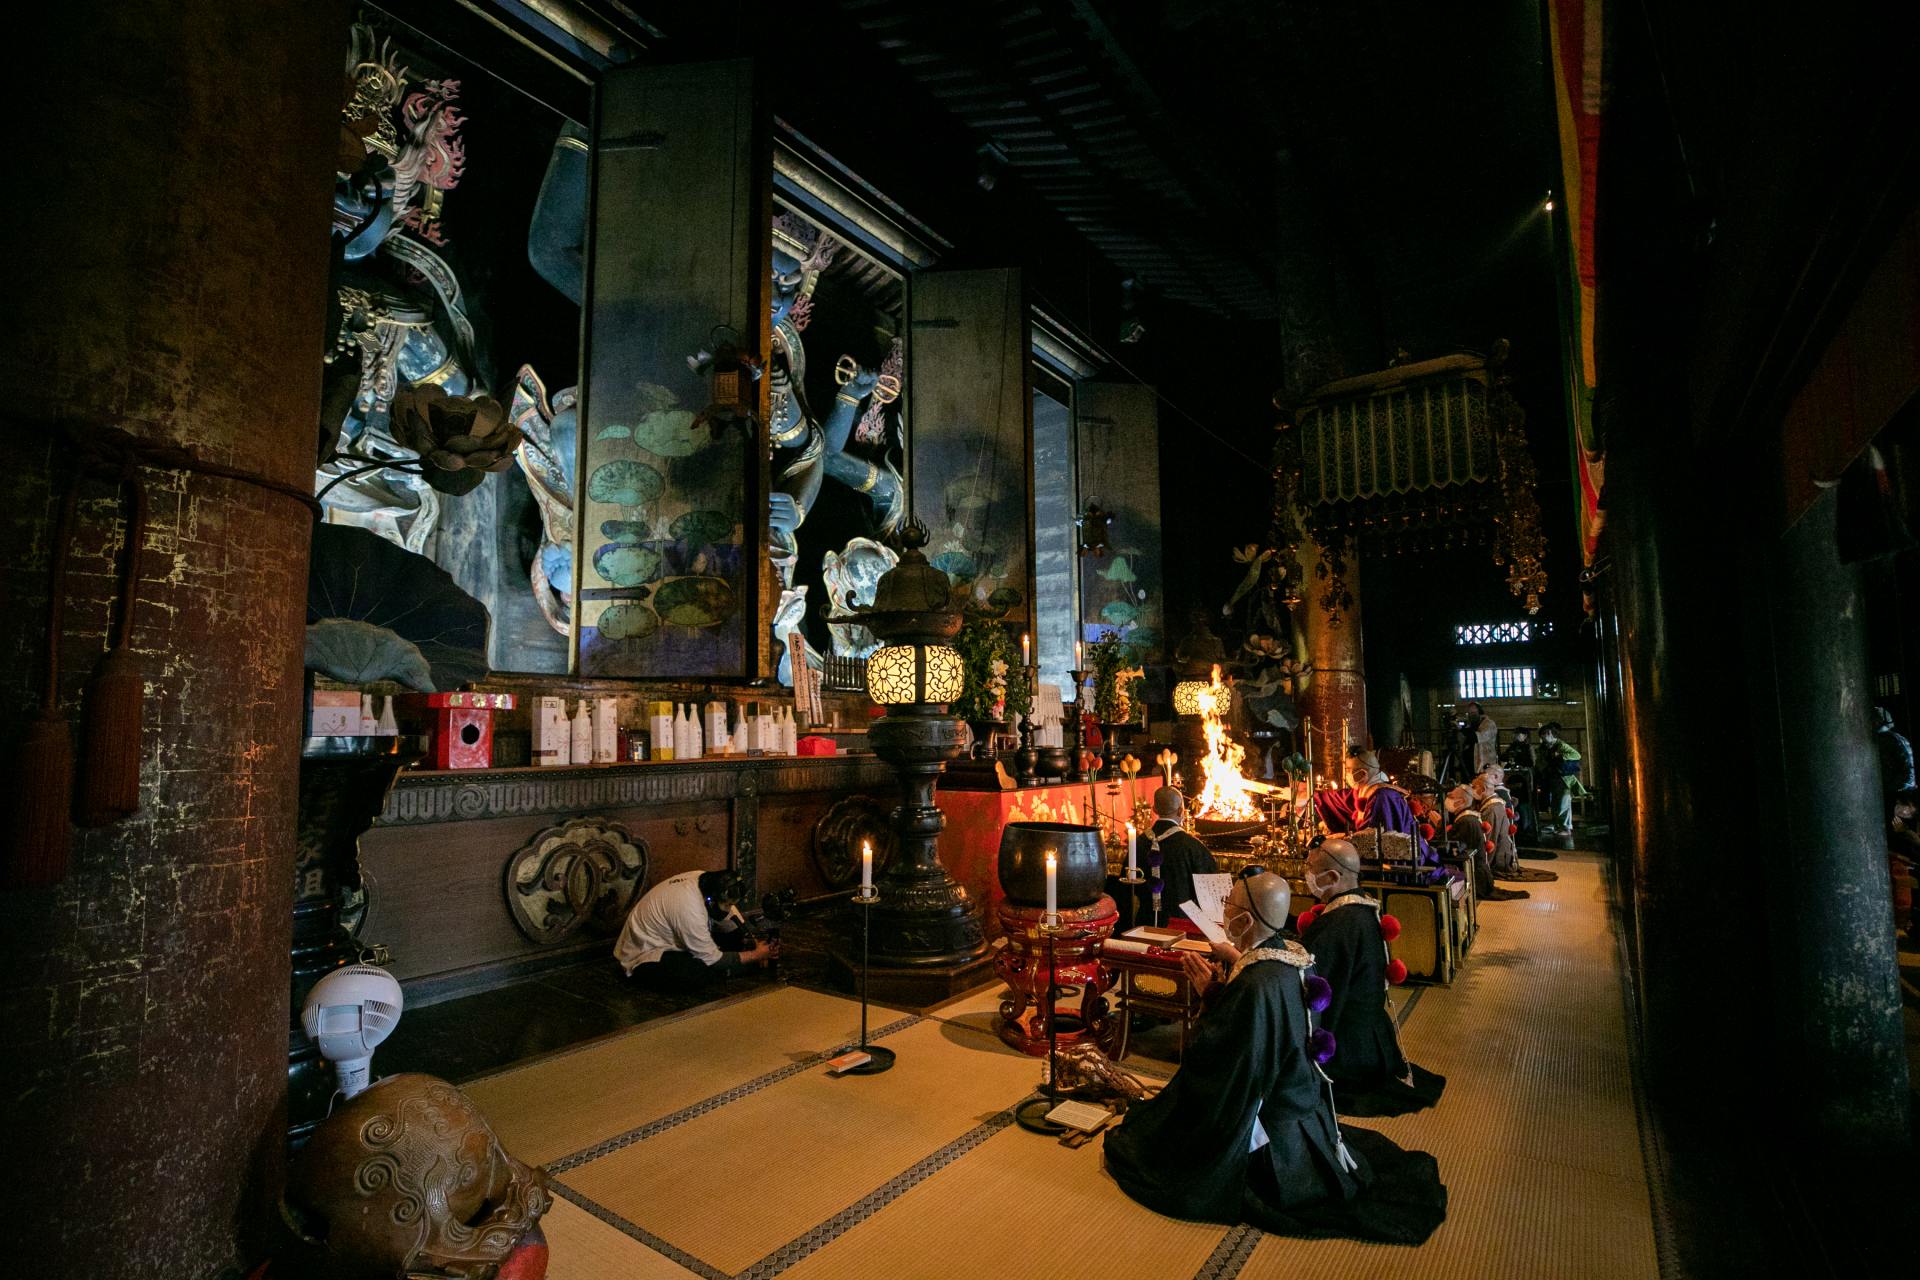 Si vous pouvez visiter pendant la période de visite spéciale, vous pouvez voir le principal objet de culte, Kongo Zao Daigongen.